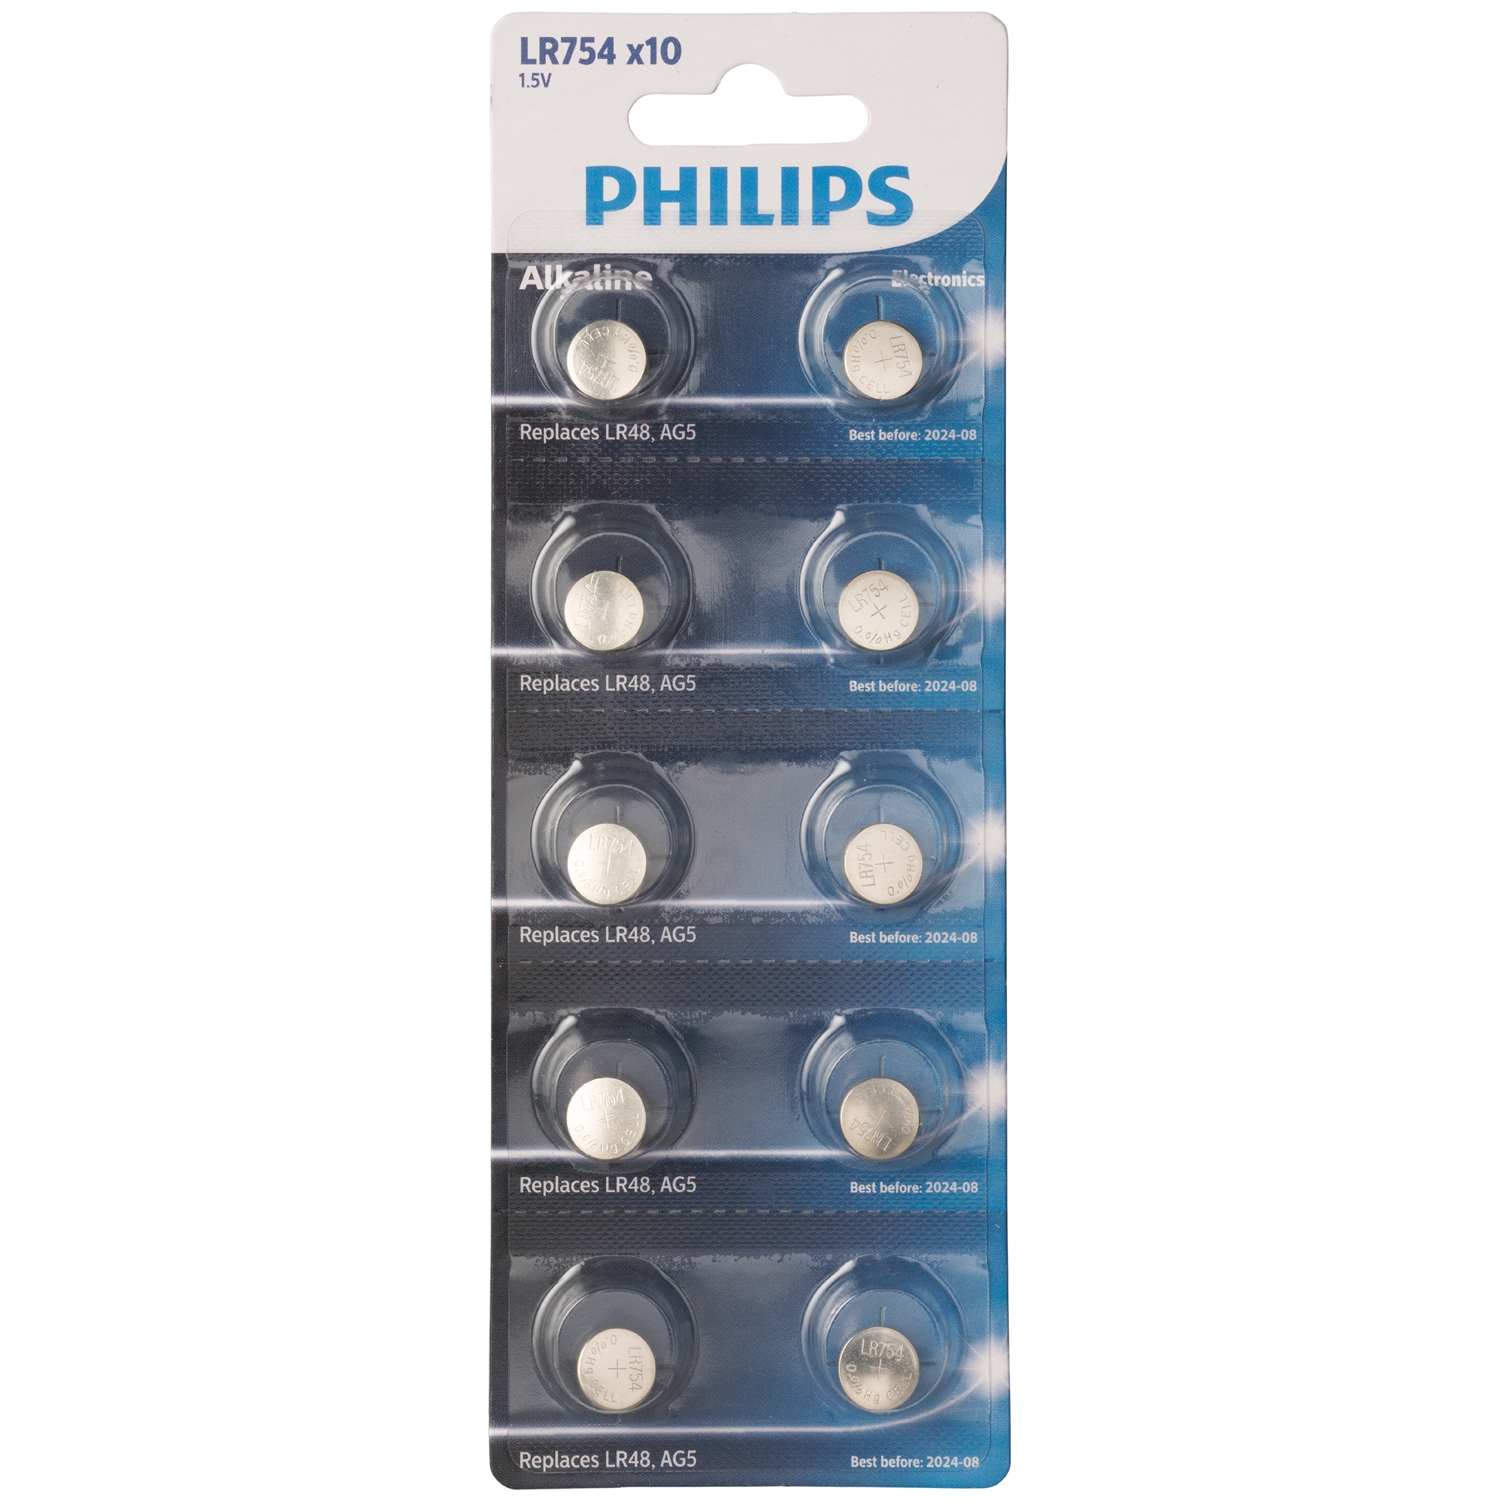 Philips Alkaline LR754 Batterier 10 stk - Sølv thumbnail